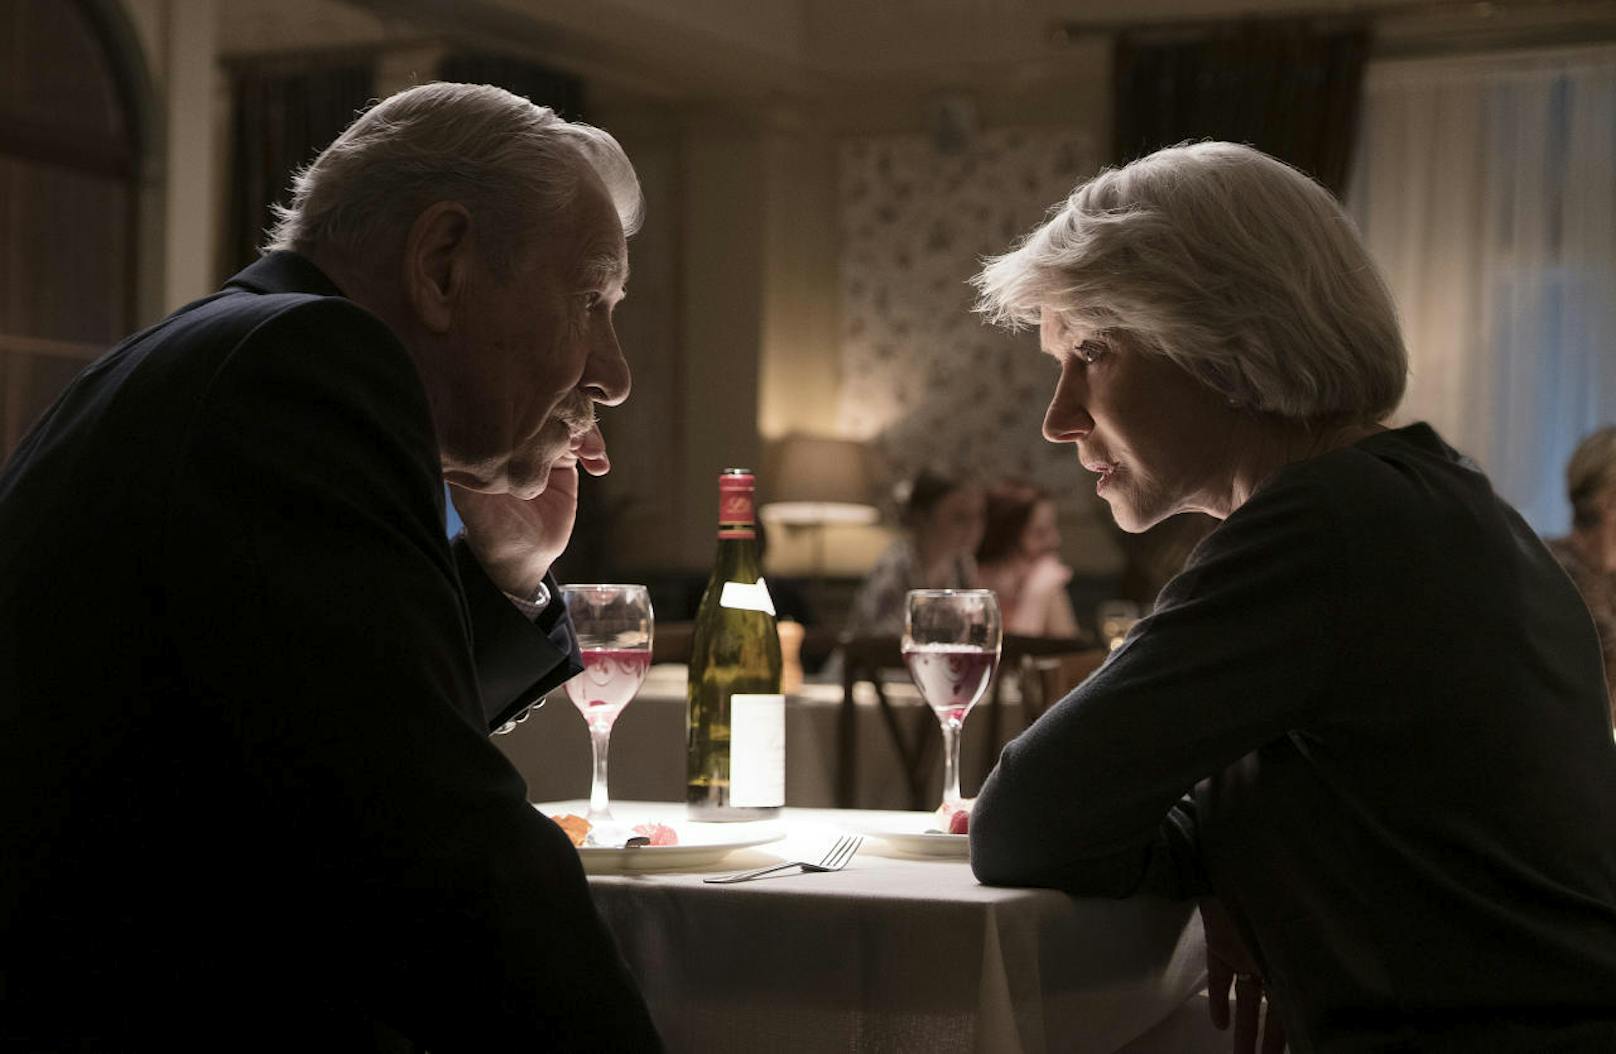 Zwischen Roy (Ian McKellen) und Betty (Helen Mirren) knistert es ab dem ersten Date. Aber könnte es sein, dass jemand böse Hintergedanken hat?